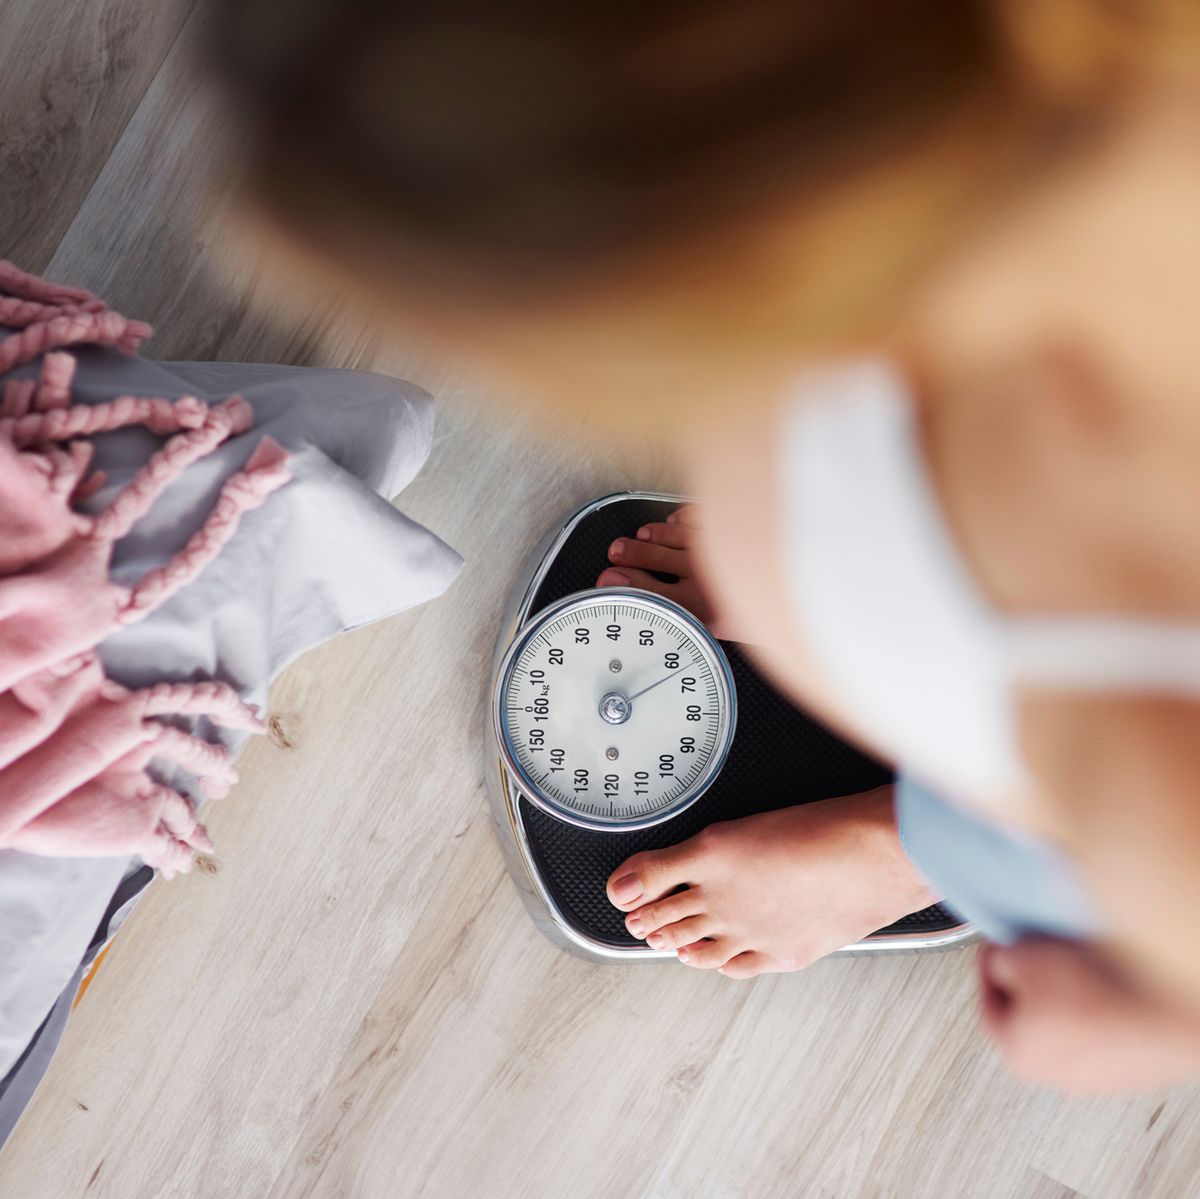 Estudios relacionados con la pérdida de peso: ¿qué dicen los expertos?